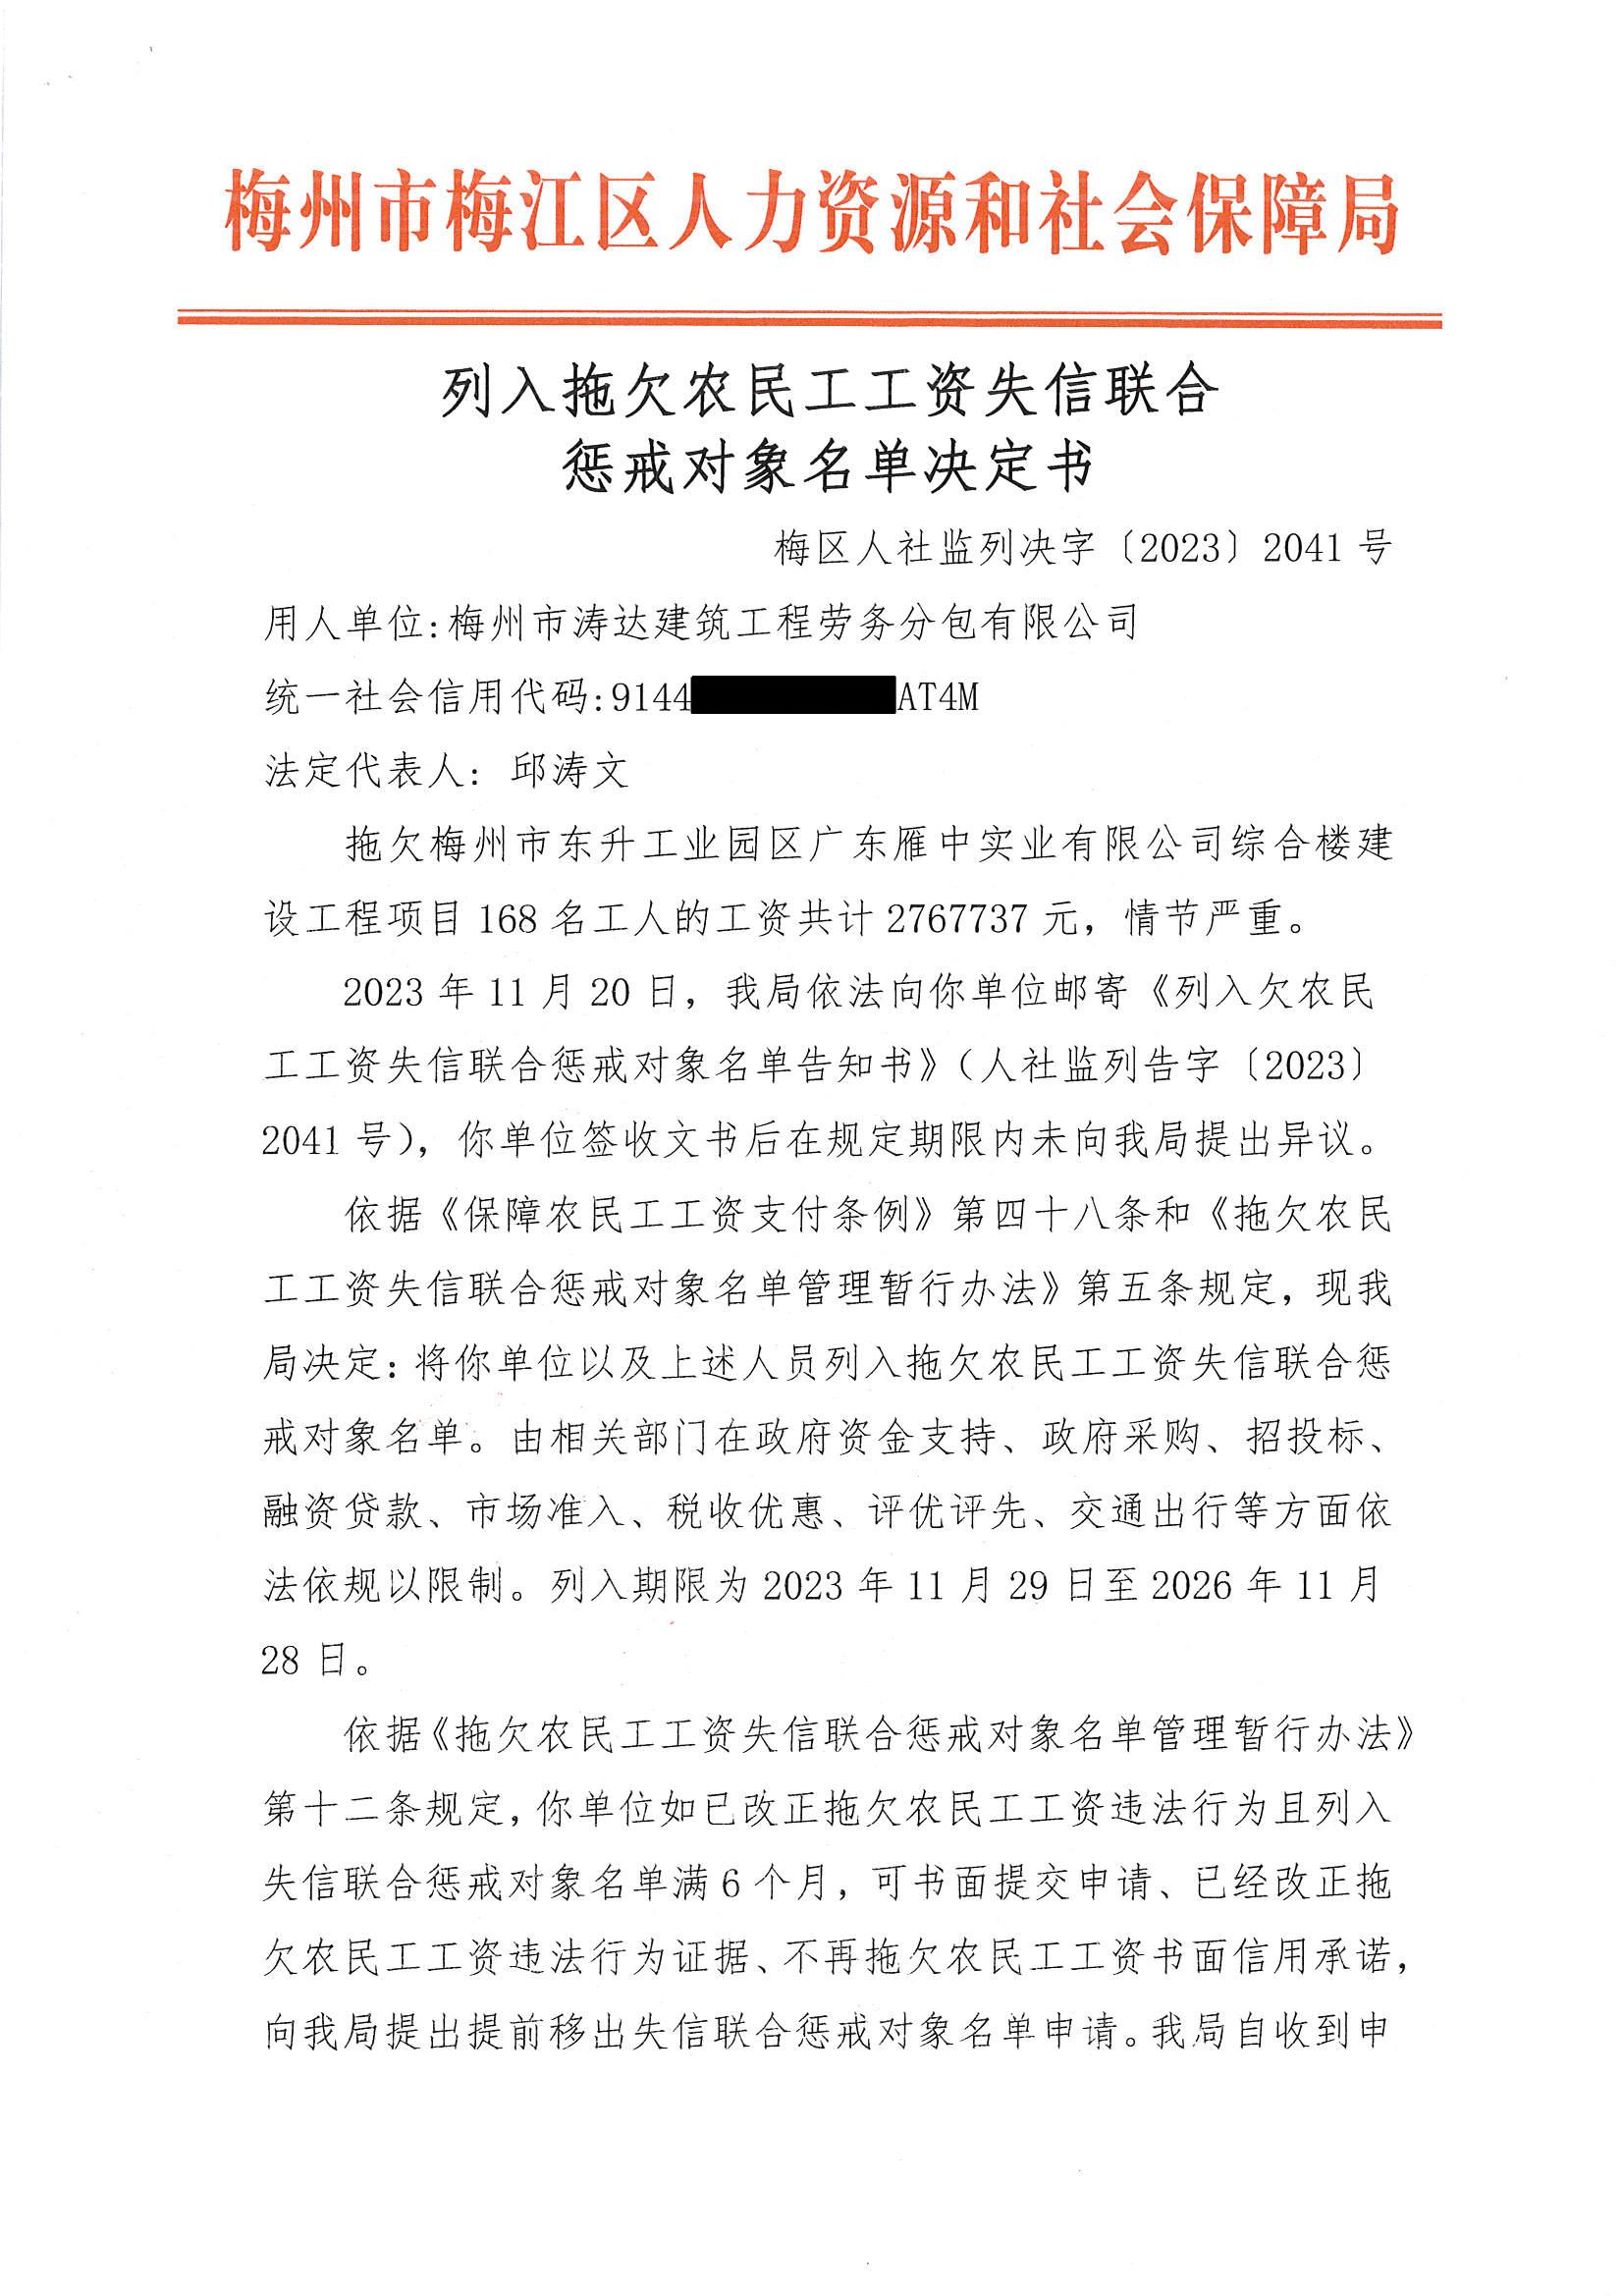 梅州市涛达建筑工程劳务分包有限公司公示文书（脱密）_页面_3.jpg